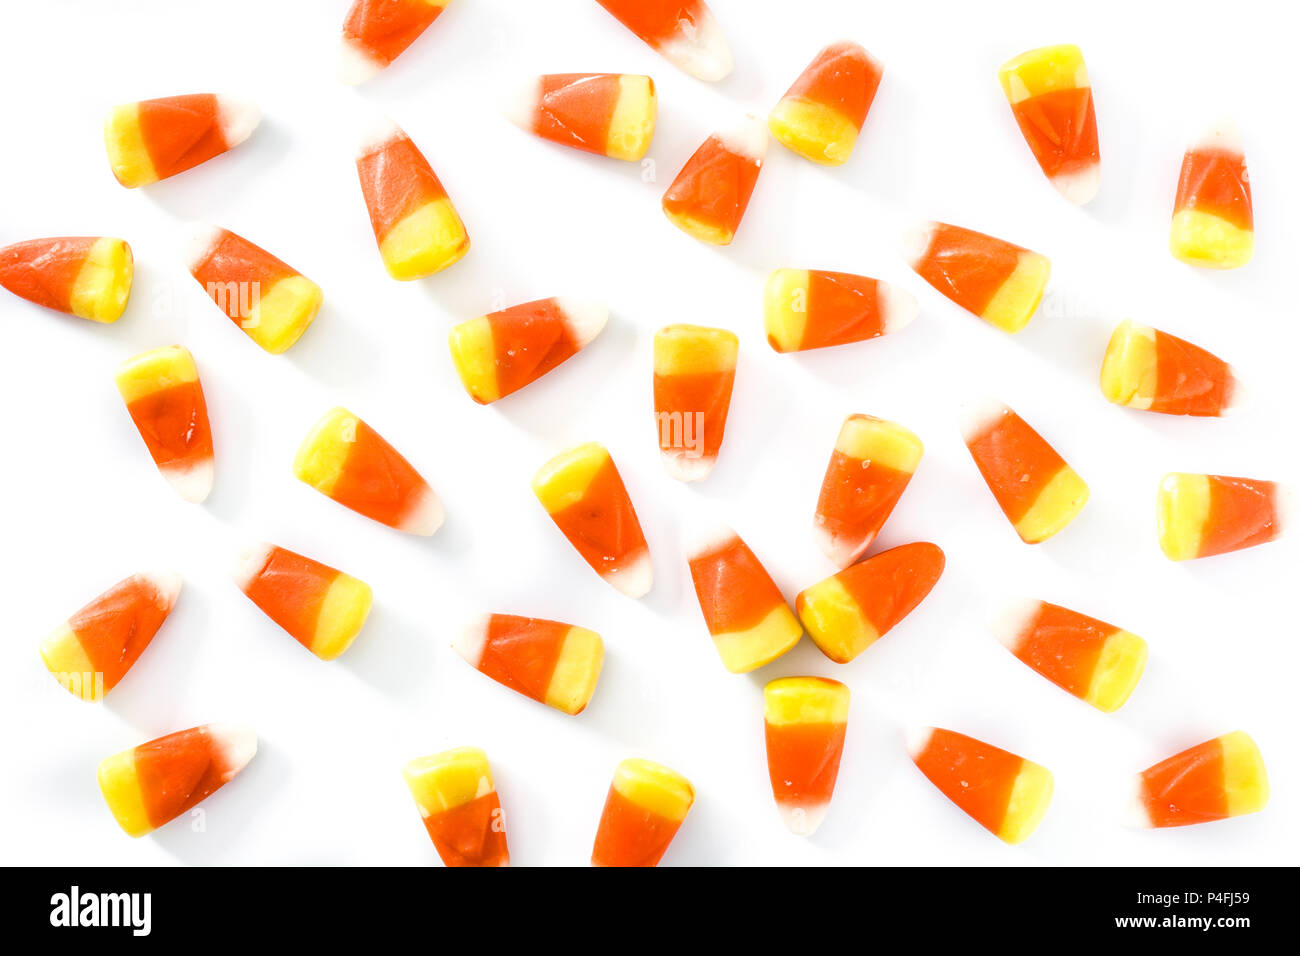 Typische Halloween Candy corn Muster auf weißem Hintergrund. Stockfoto